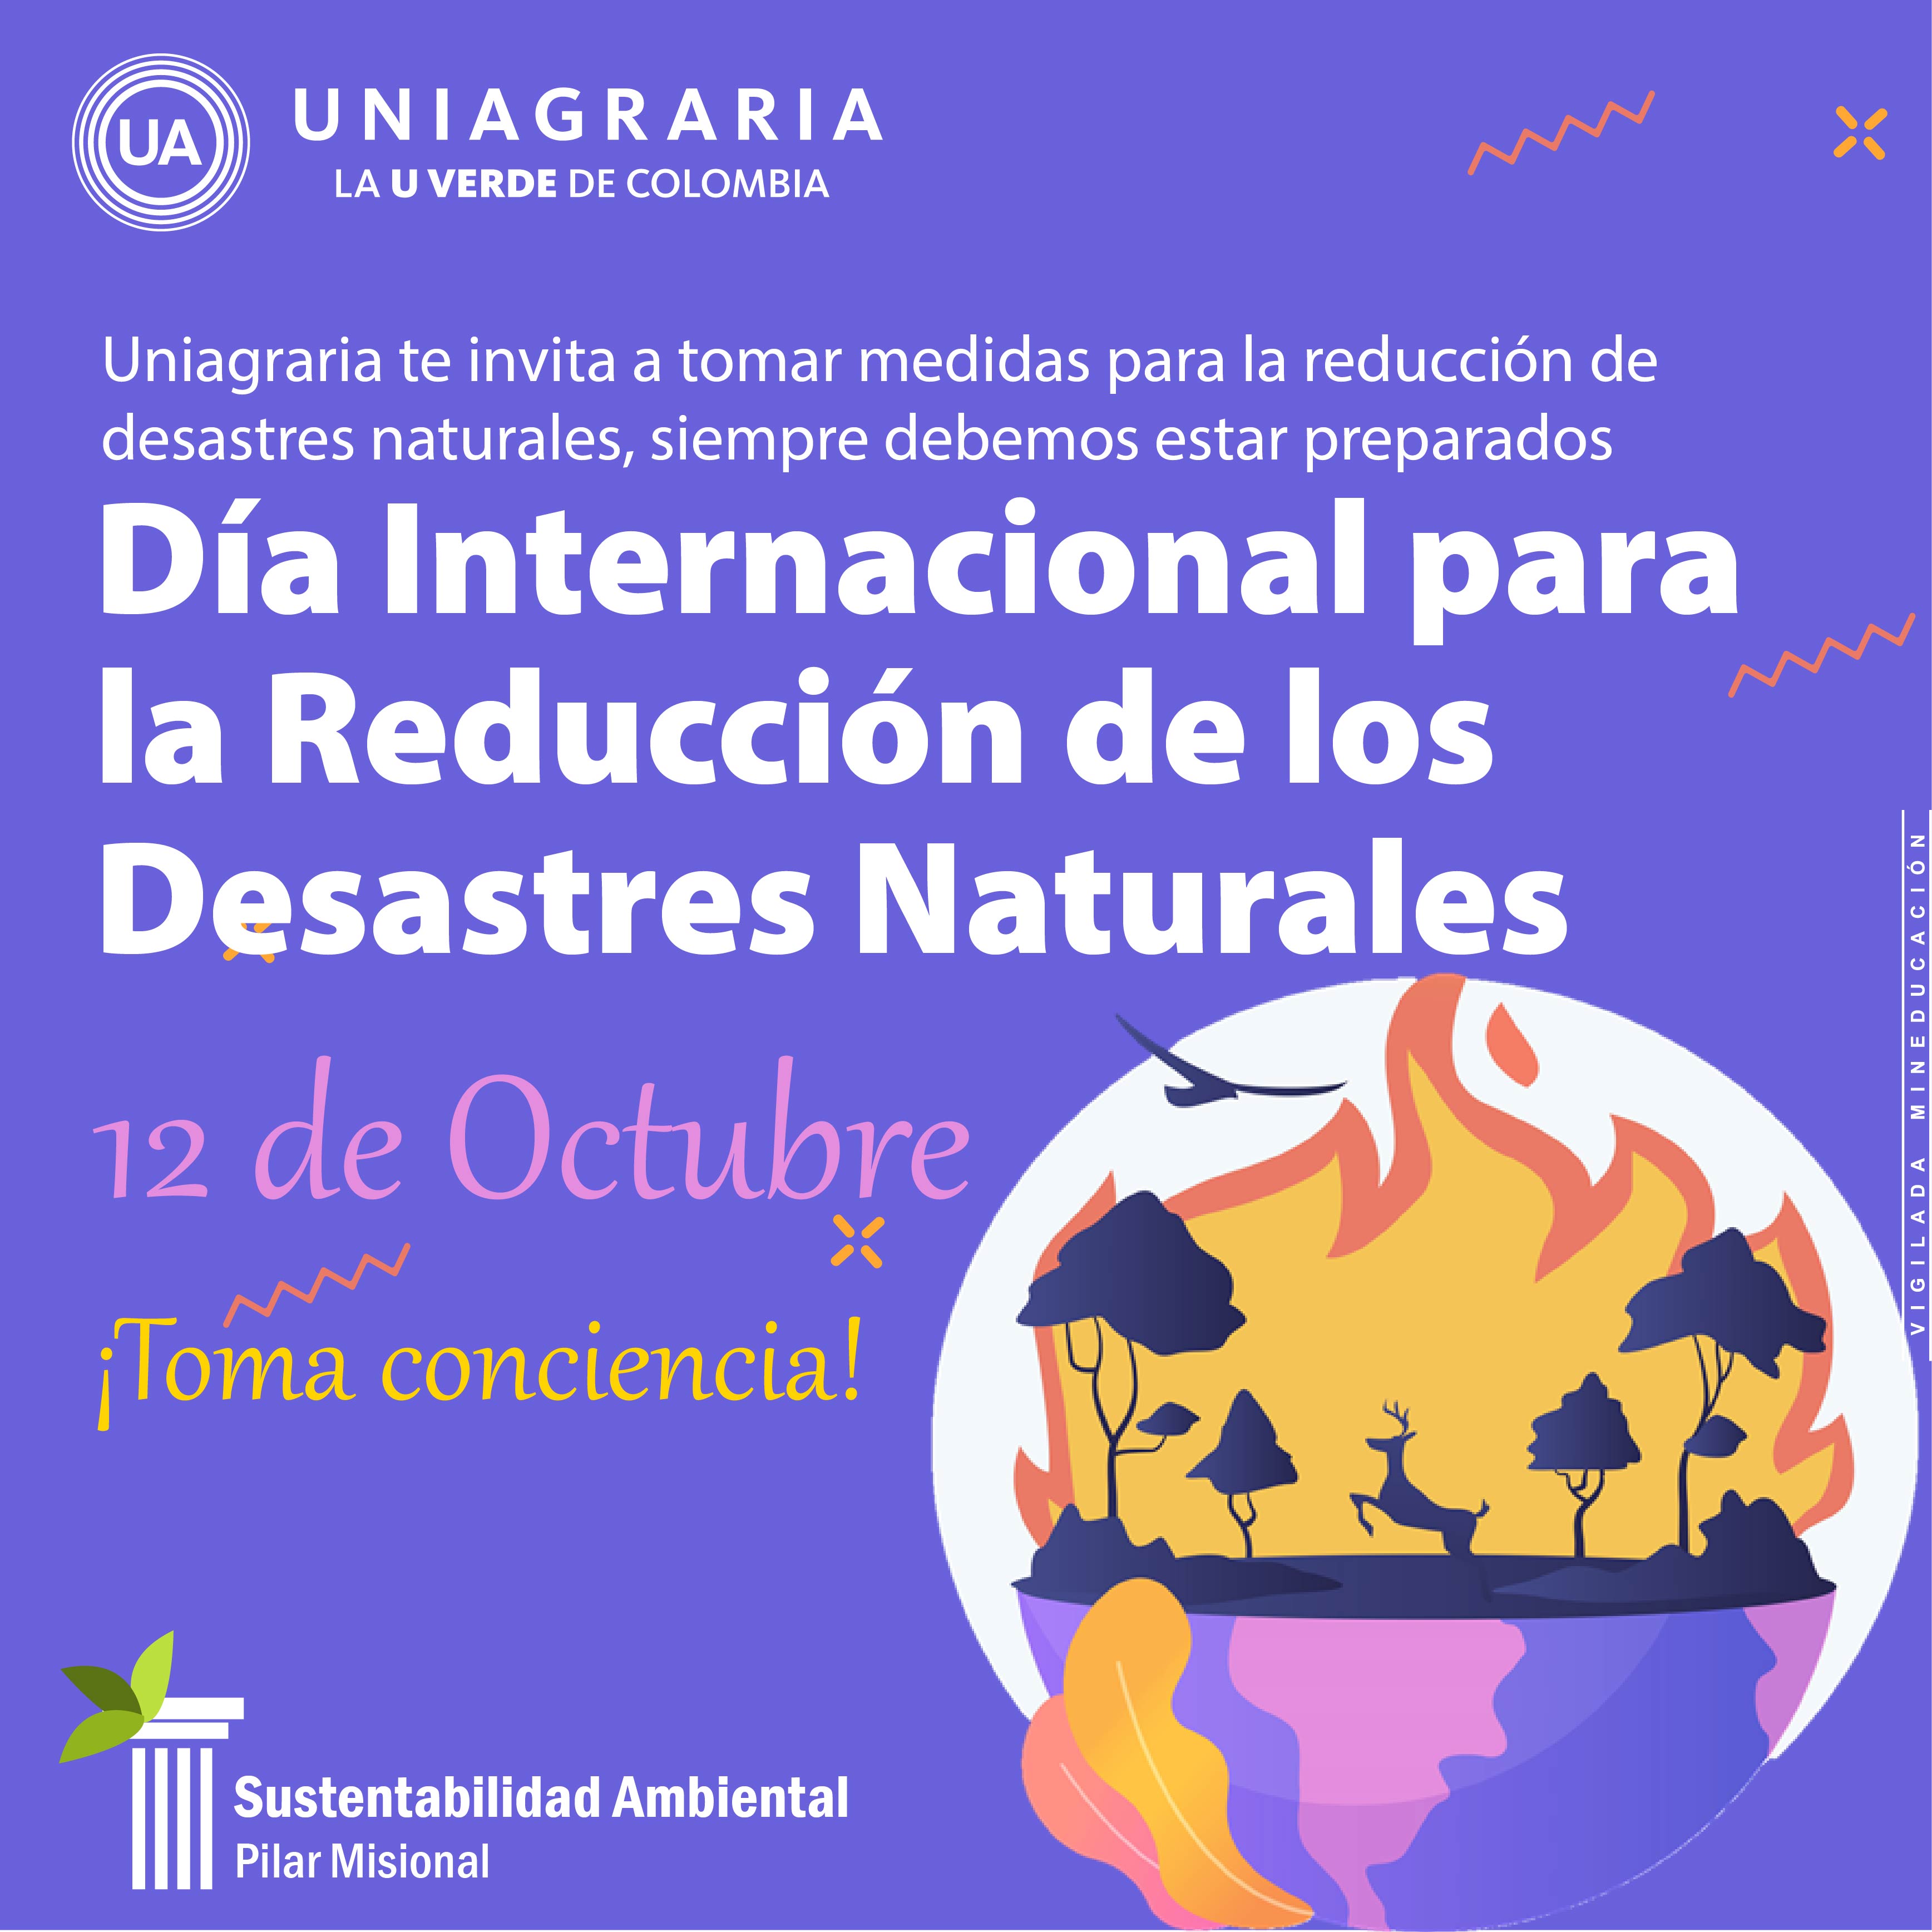 Día Internacional para la Reducción de los Desastres Naturales